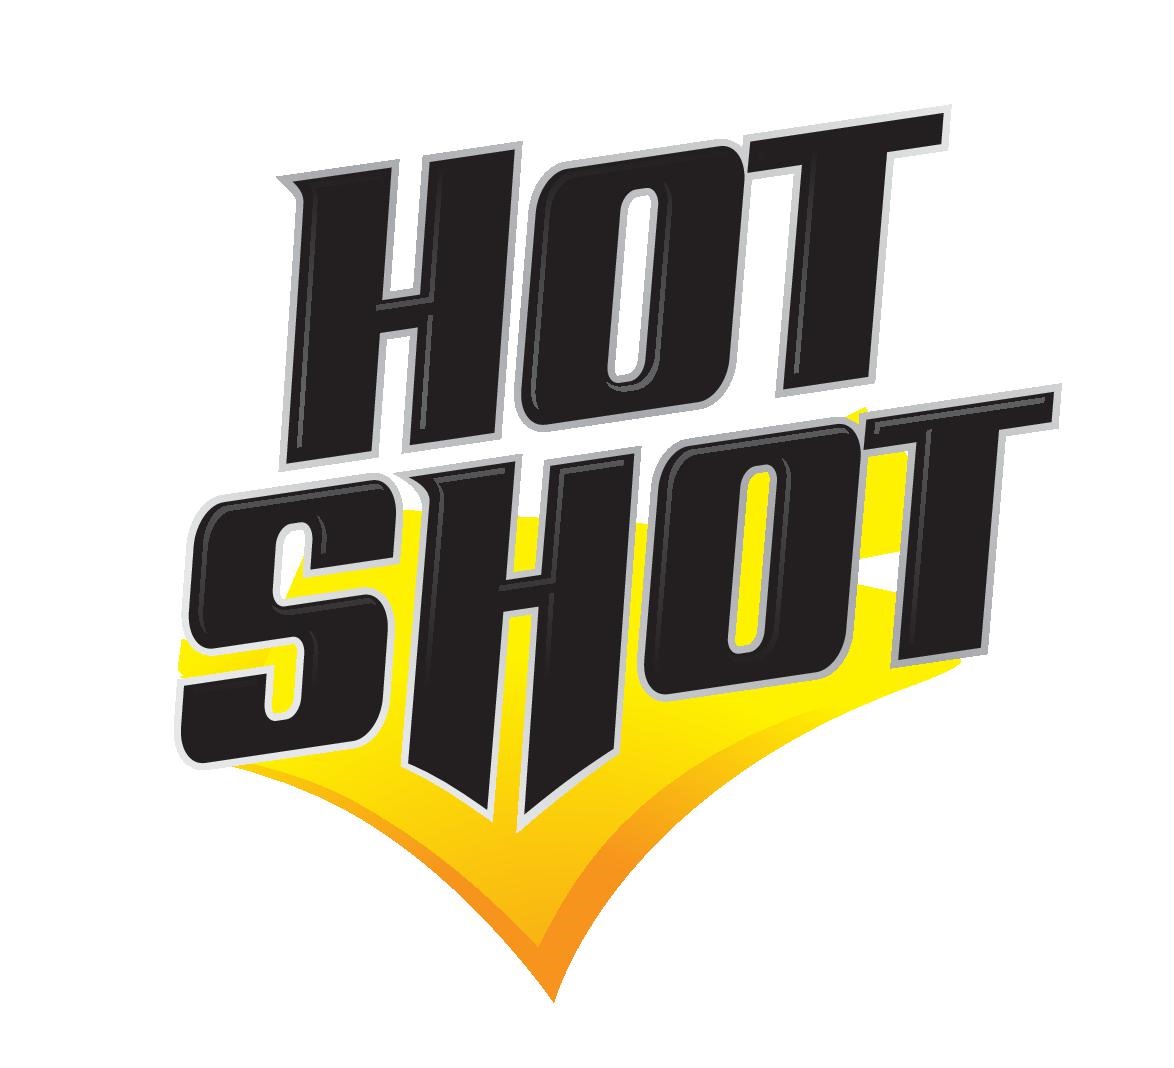 Hot-Shot